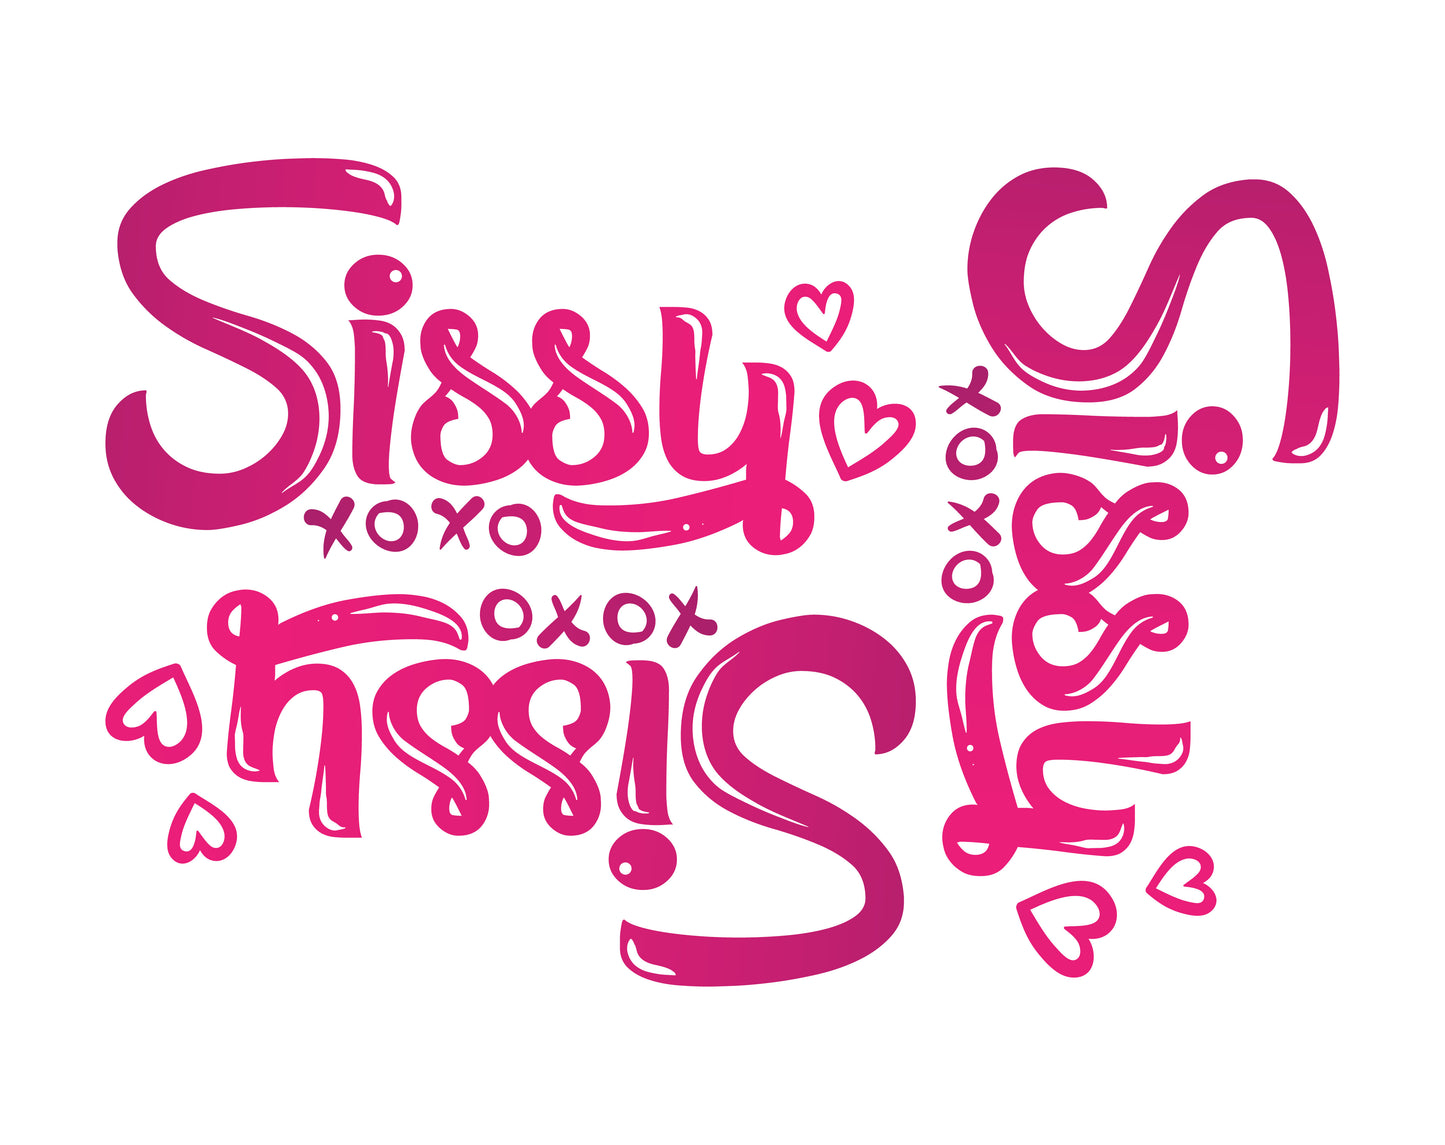 XL Sissy (A5 Mega Sheet)